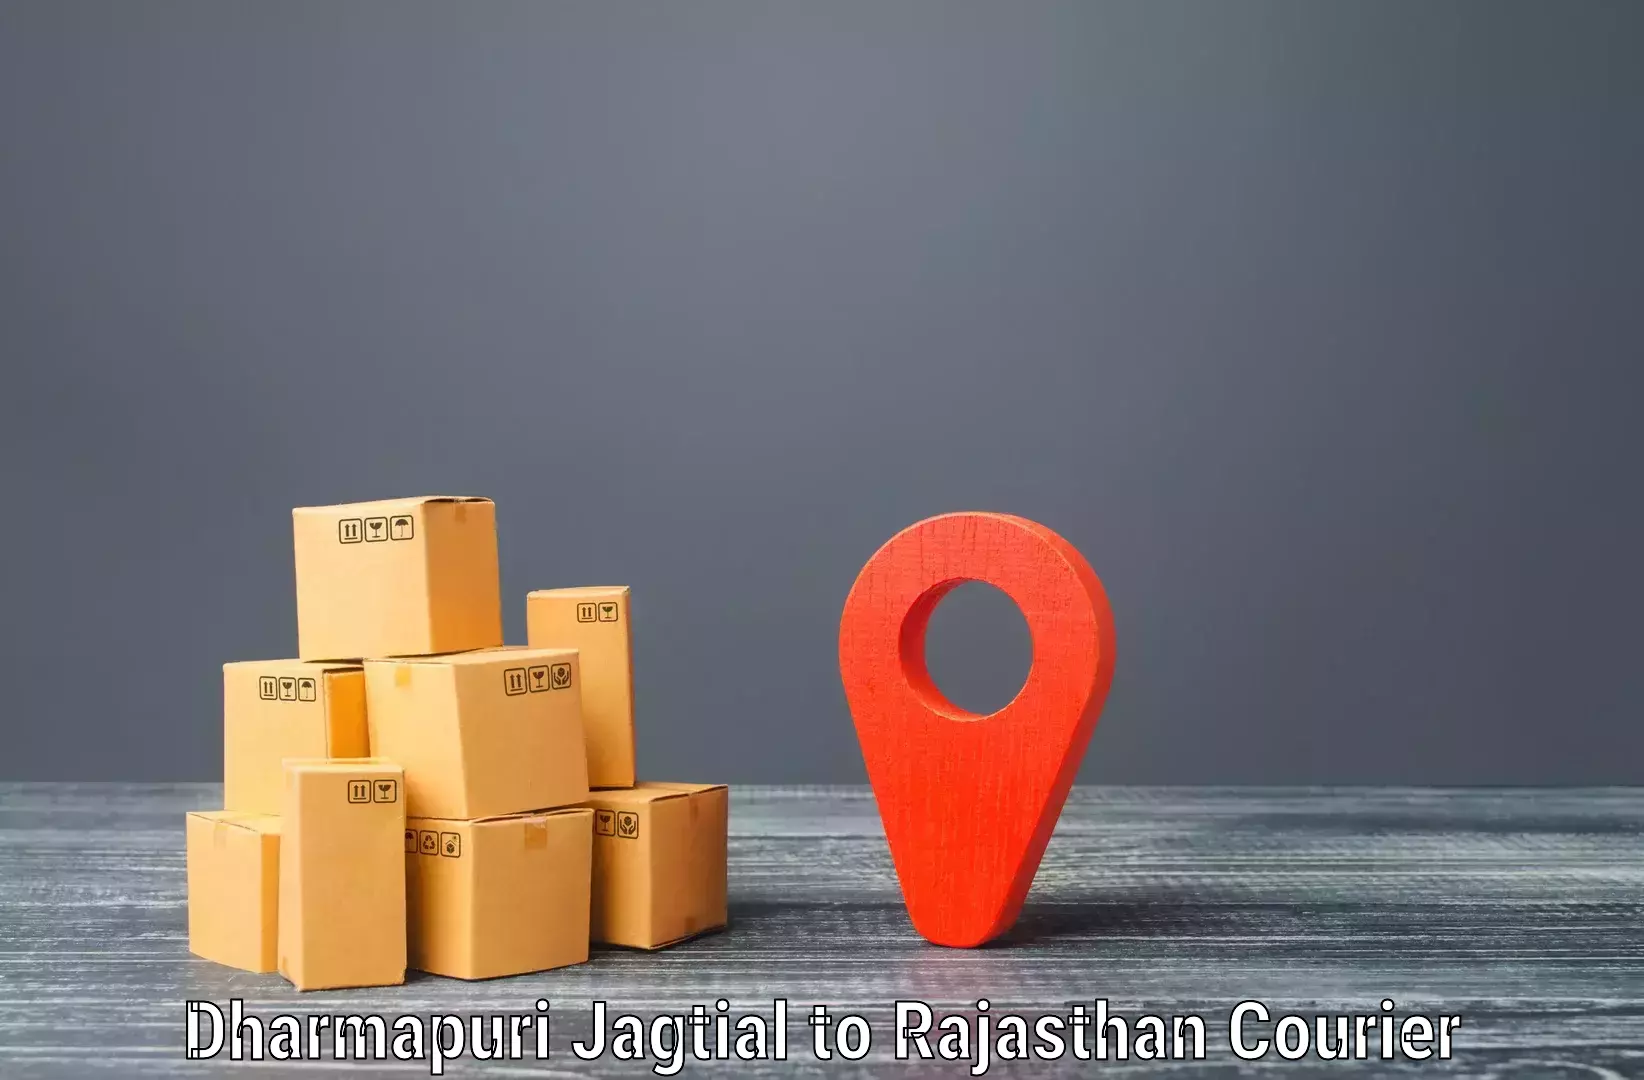 Nationwide delivery network Dharmapuri Jagtial to Shri Dungargarh